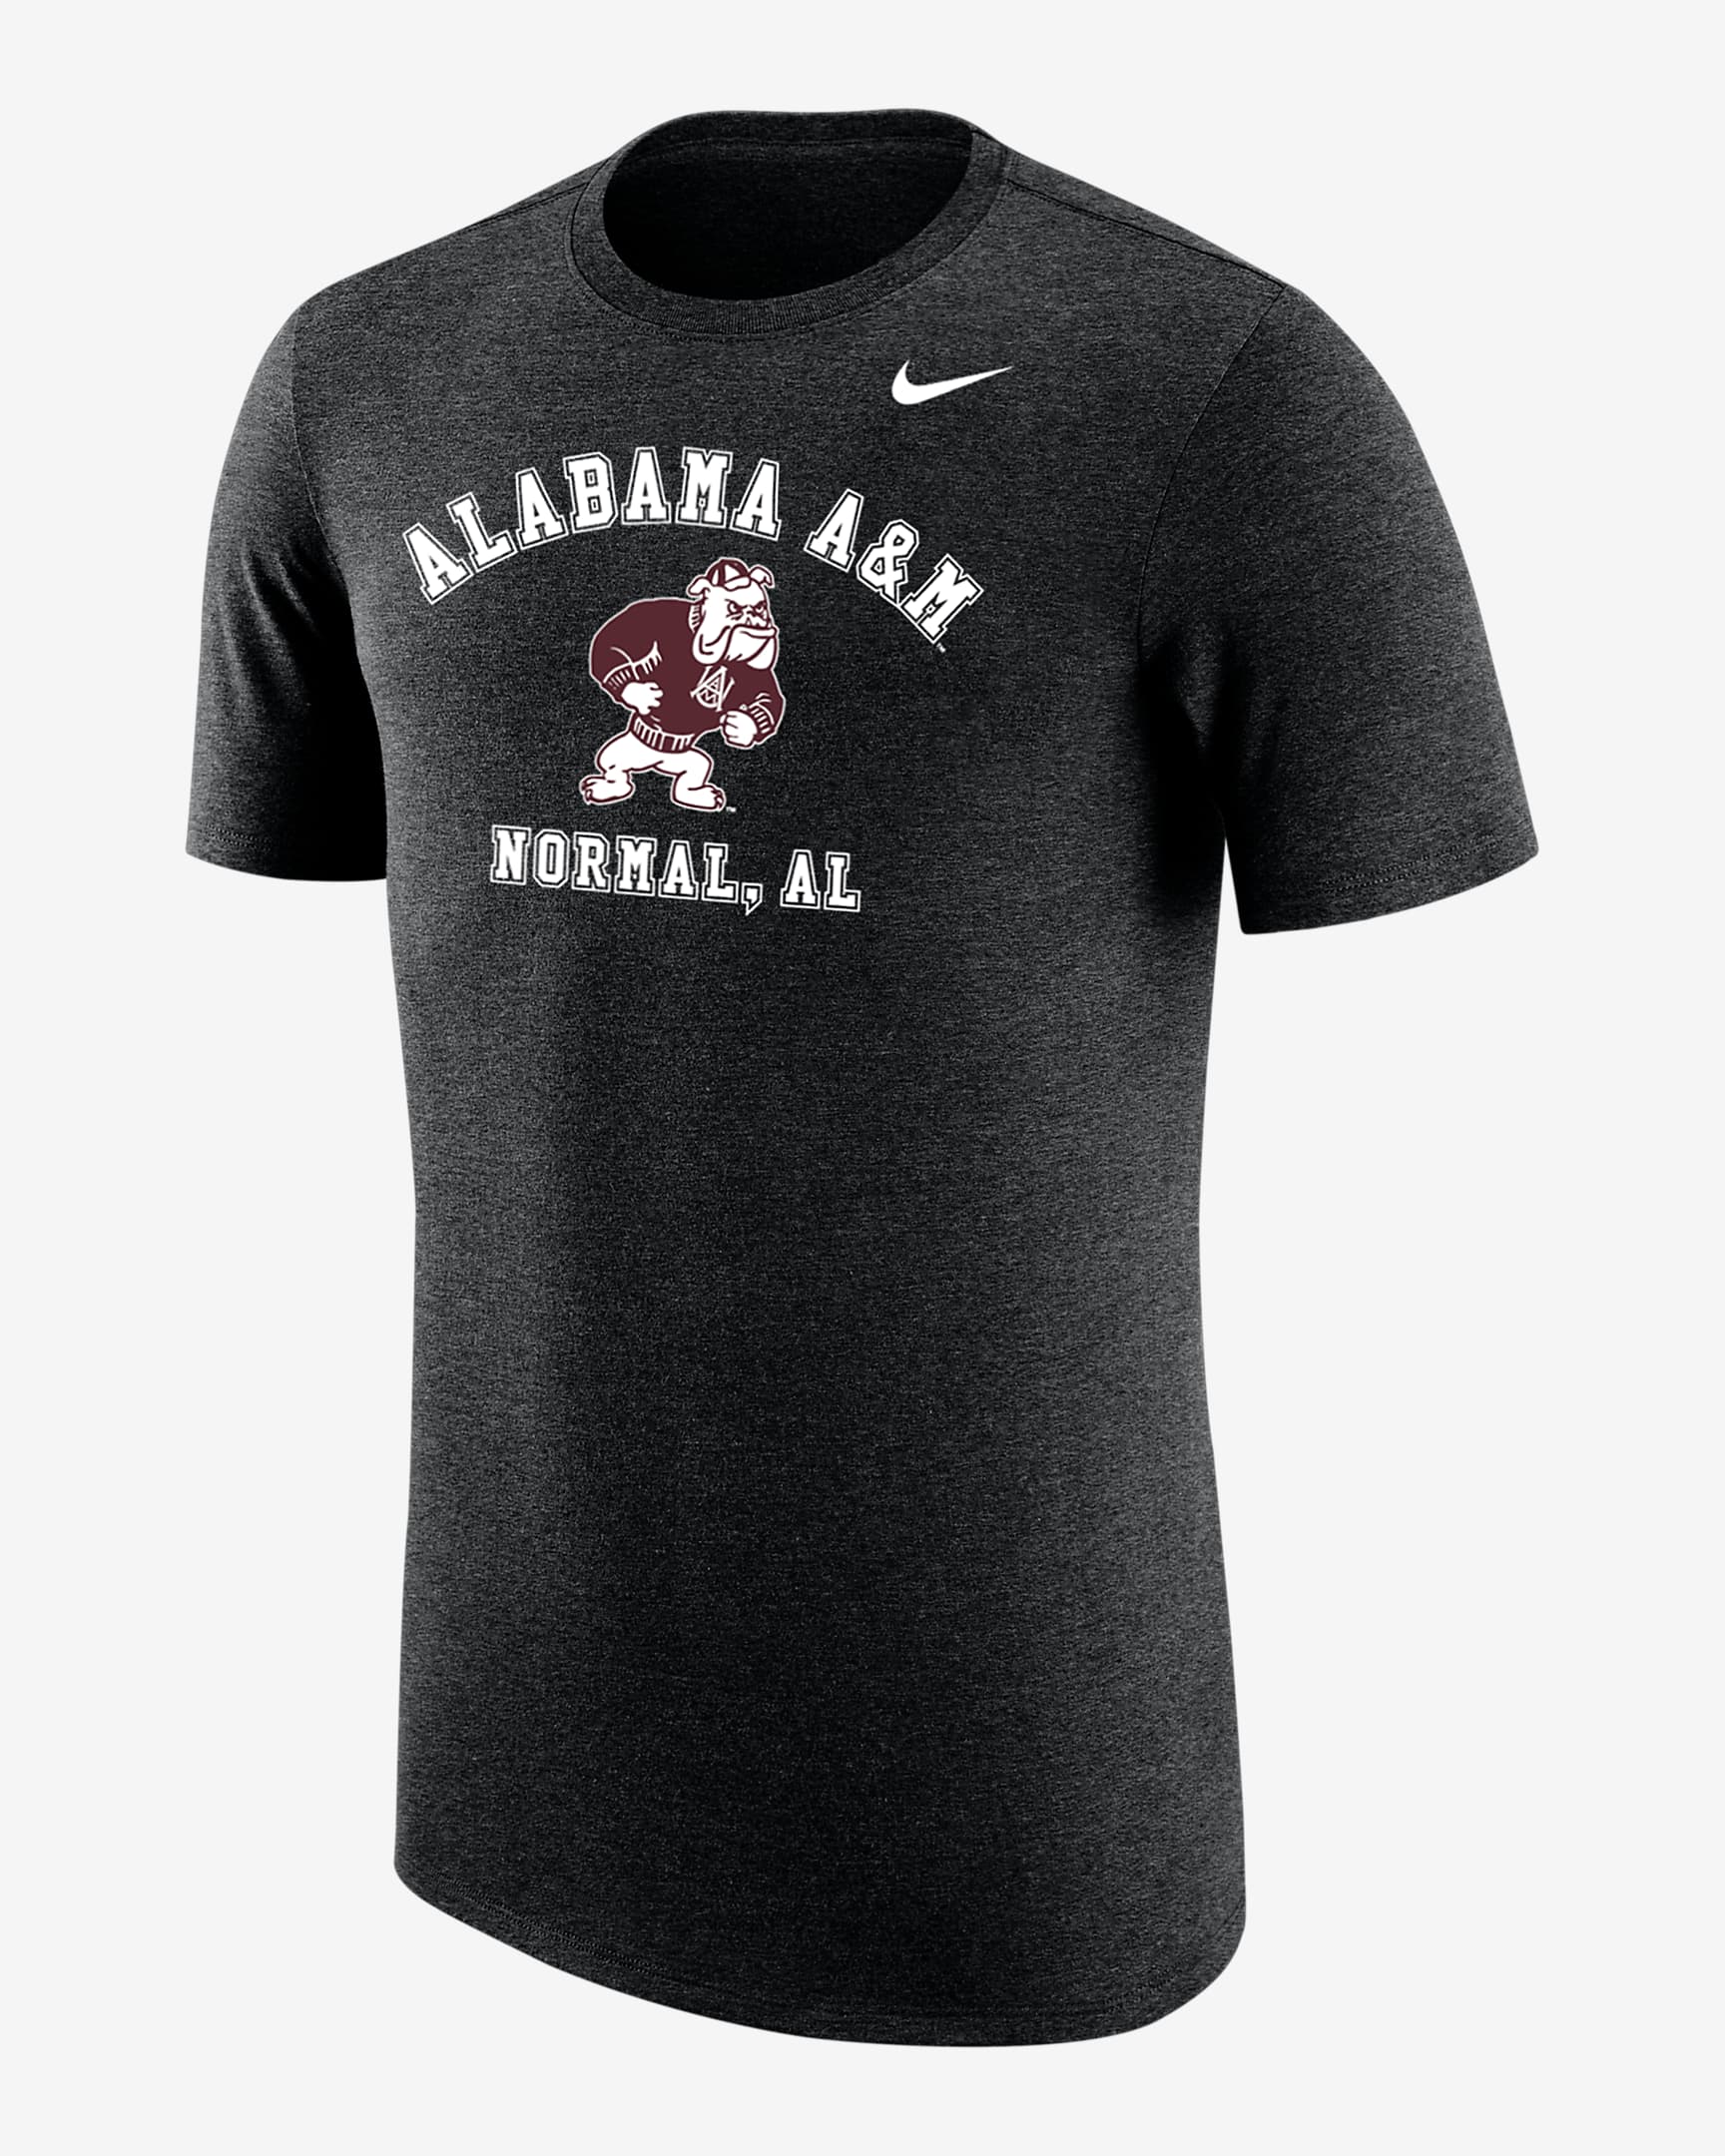 Playera Nike College para hombre Alabama A&M. Nike.com